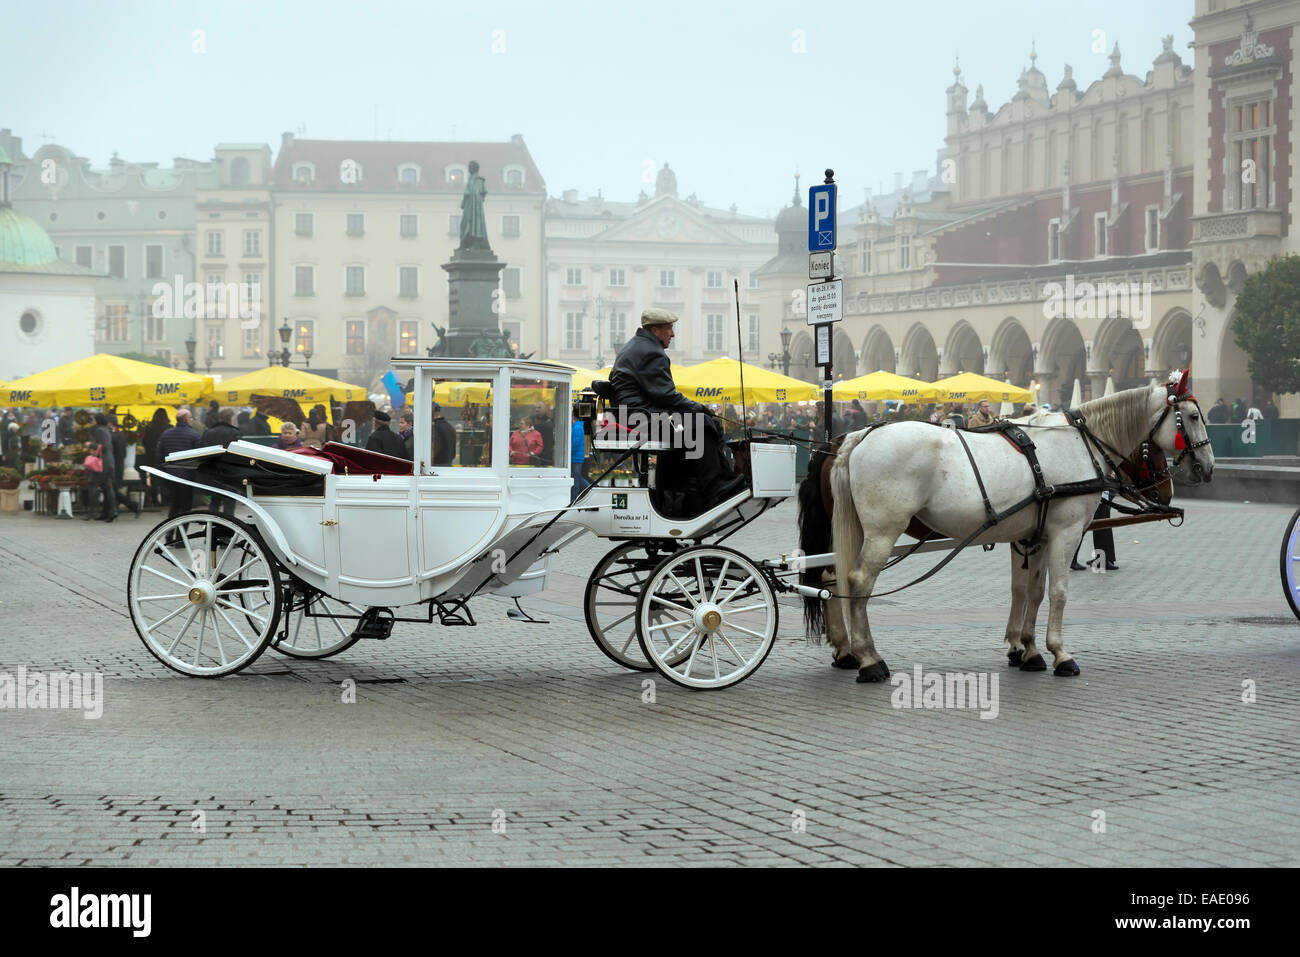 Cracovia in Polonia - 26 ottobre 2014: carrozza su Cracovia la piazza principale del mercato. In fondo è una città storica chiamata hall Foto Stock